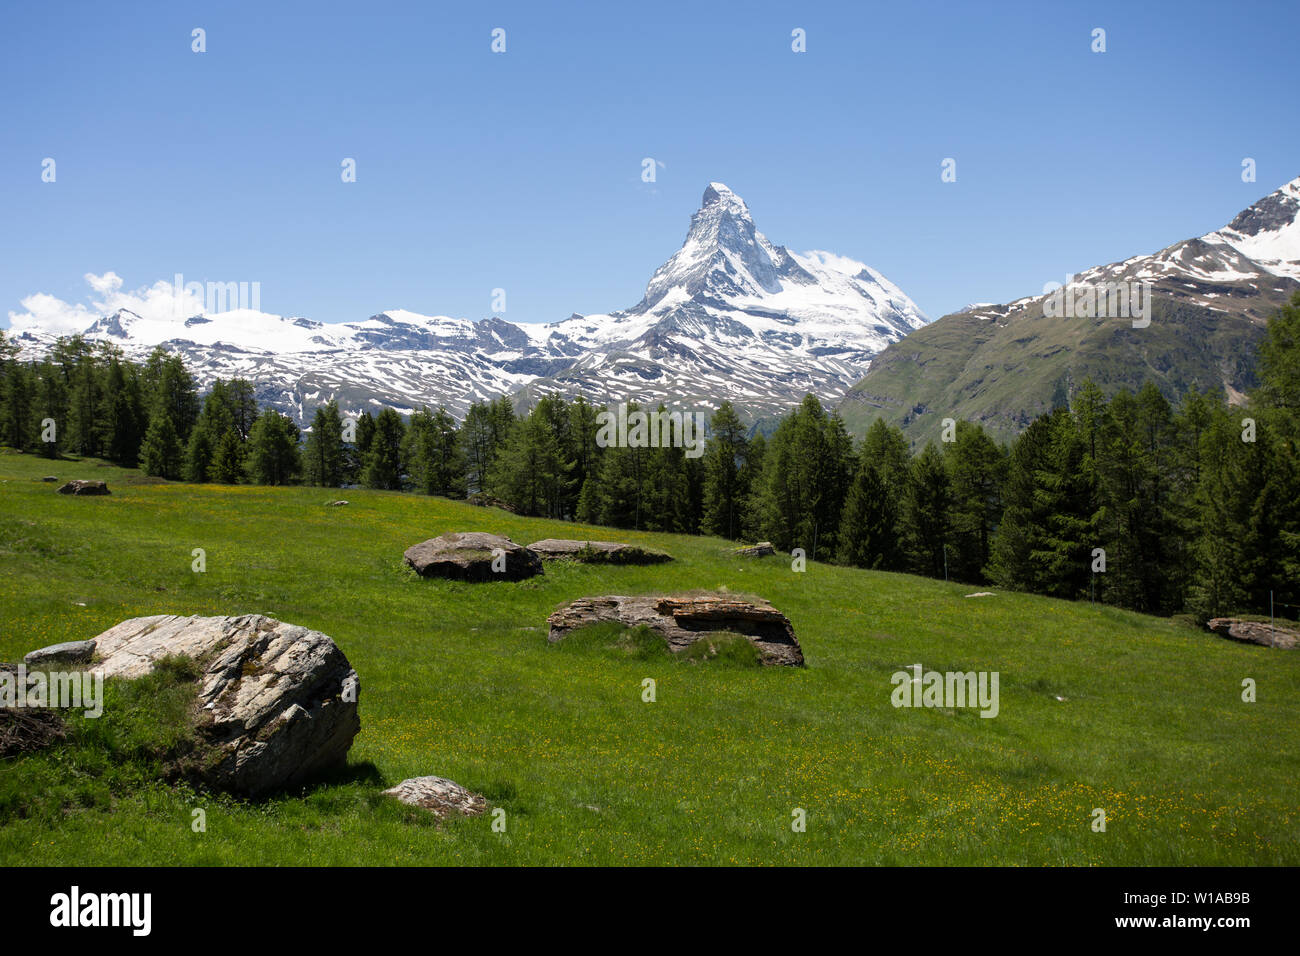 La montagne Matterhorn et prairies de fleurs alpines, Zermatt, Suisse Banque D'Images